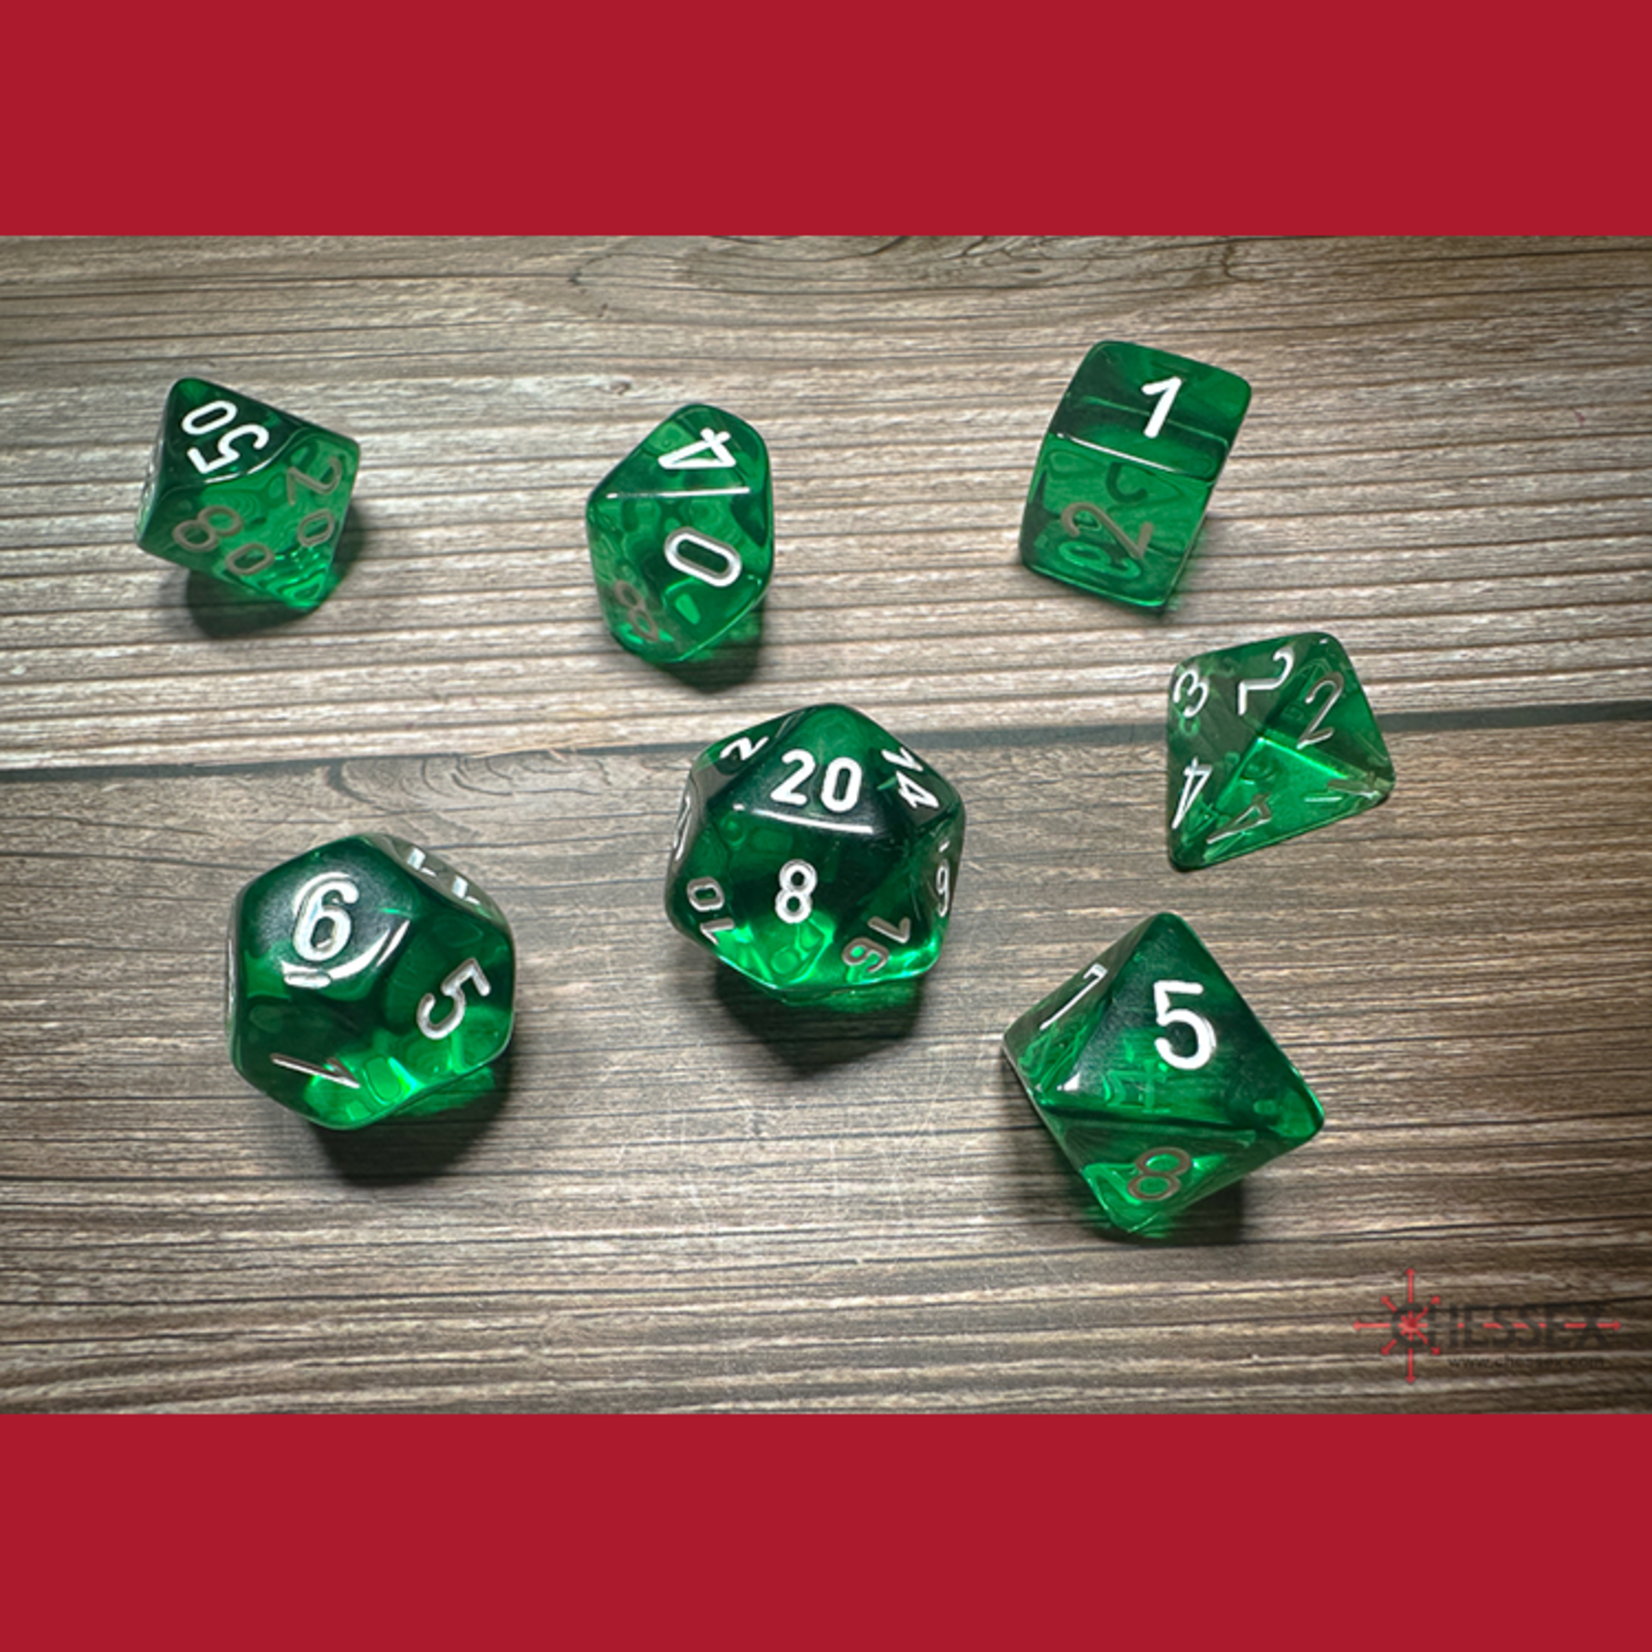 Chessex CHX 23075 Translucent Green / White Polyhedral 7-die Set